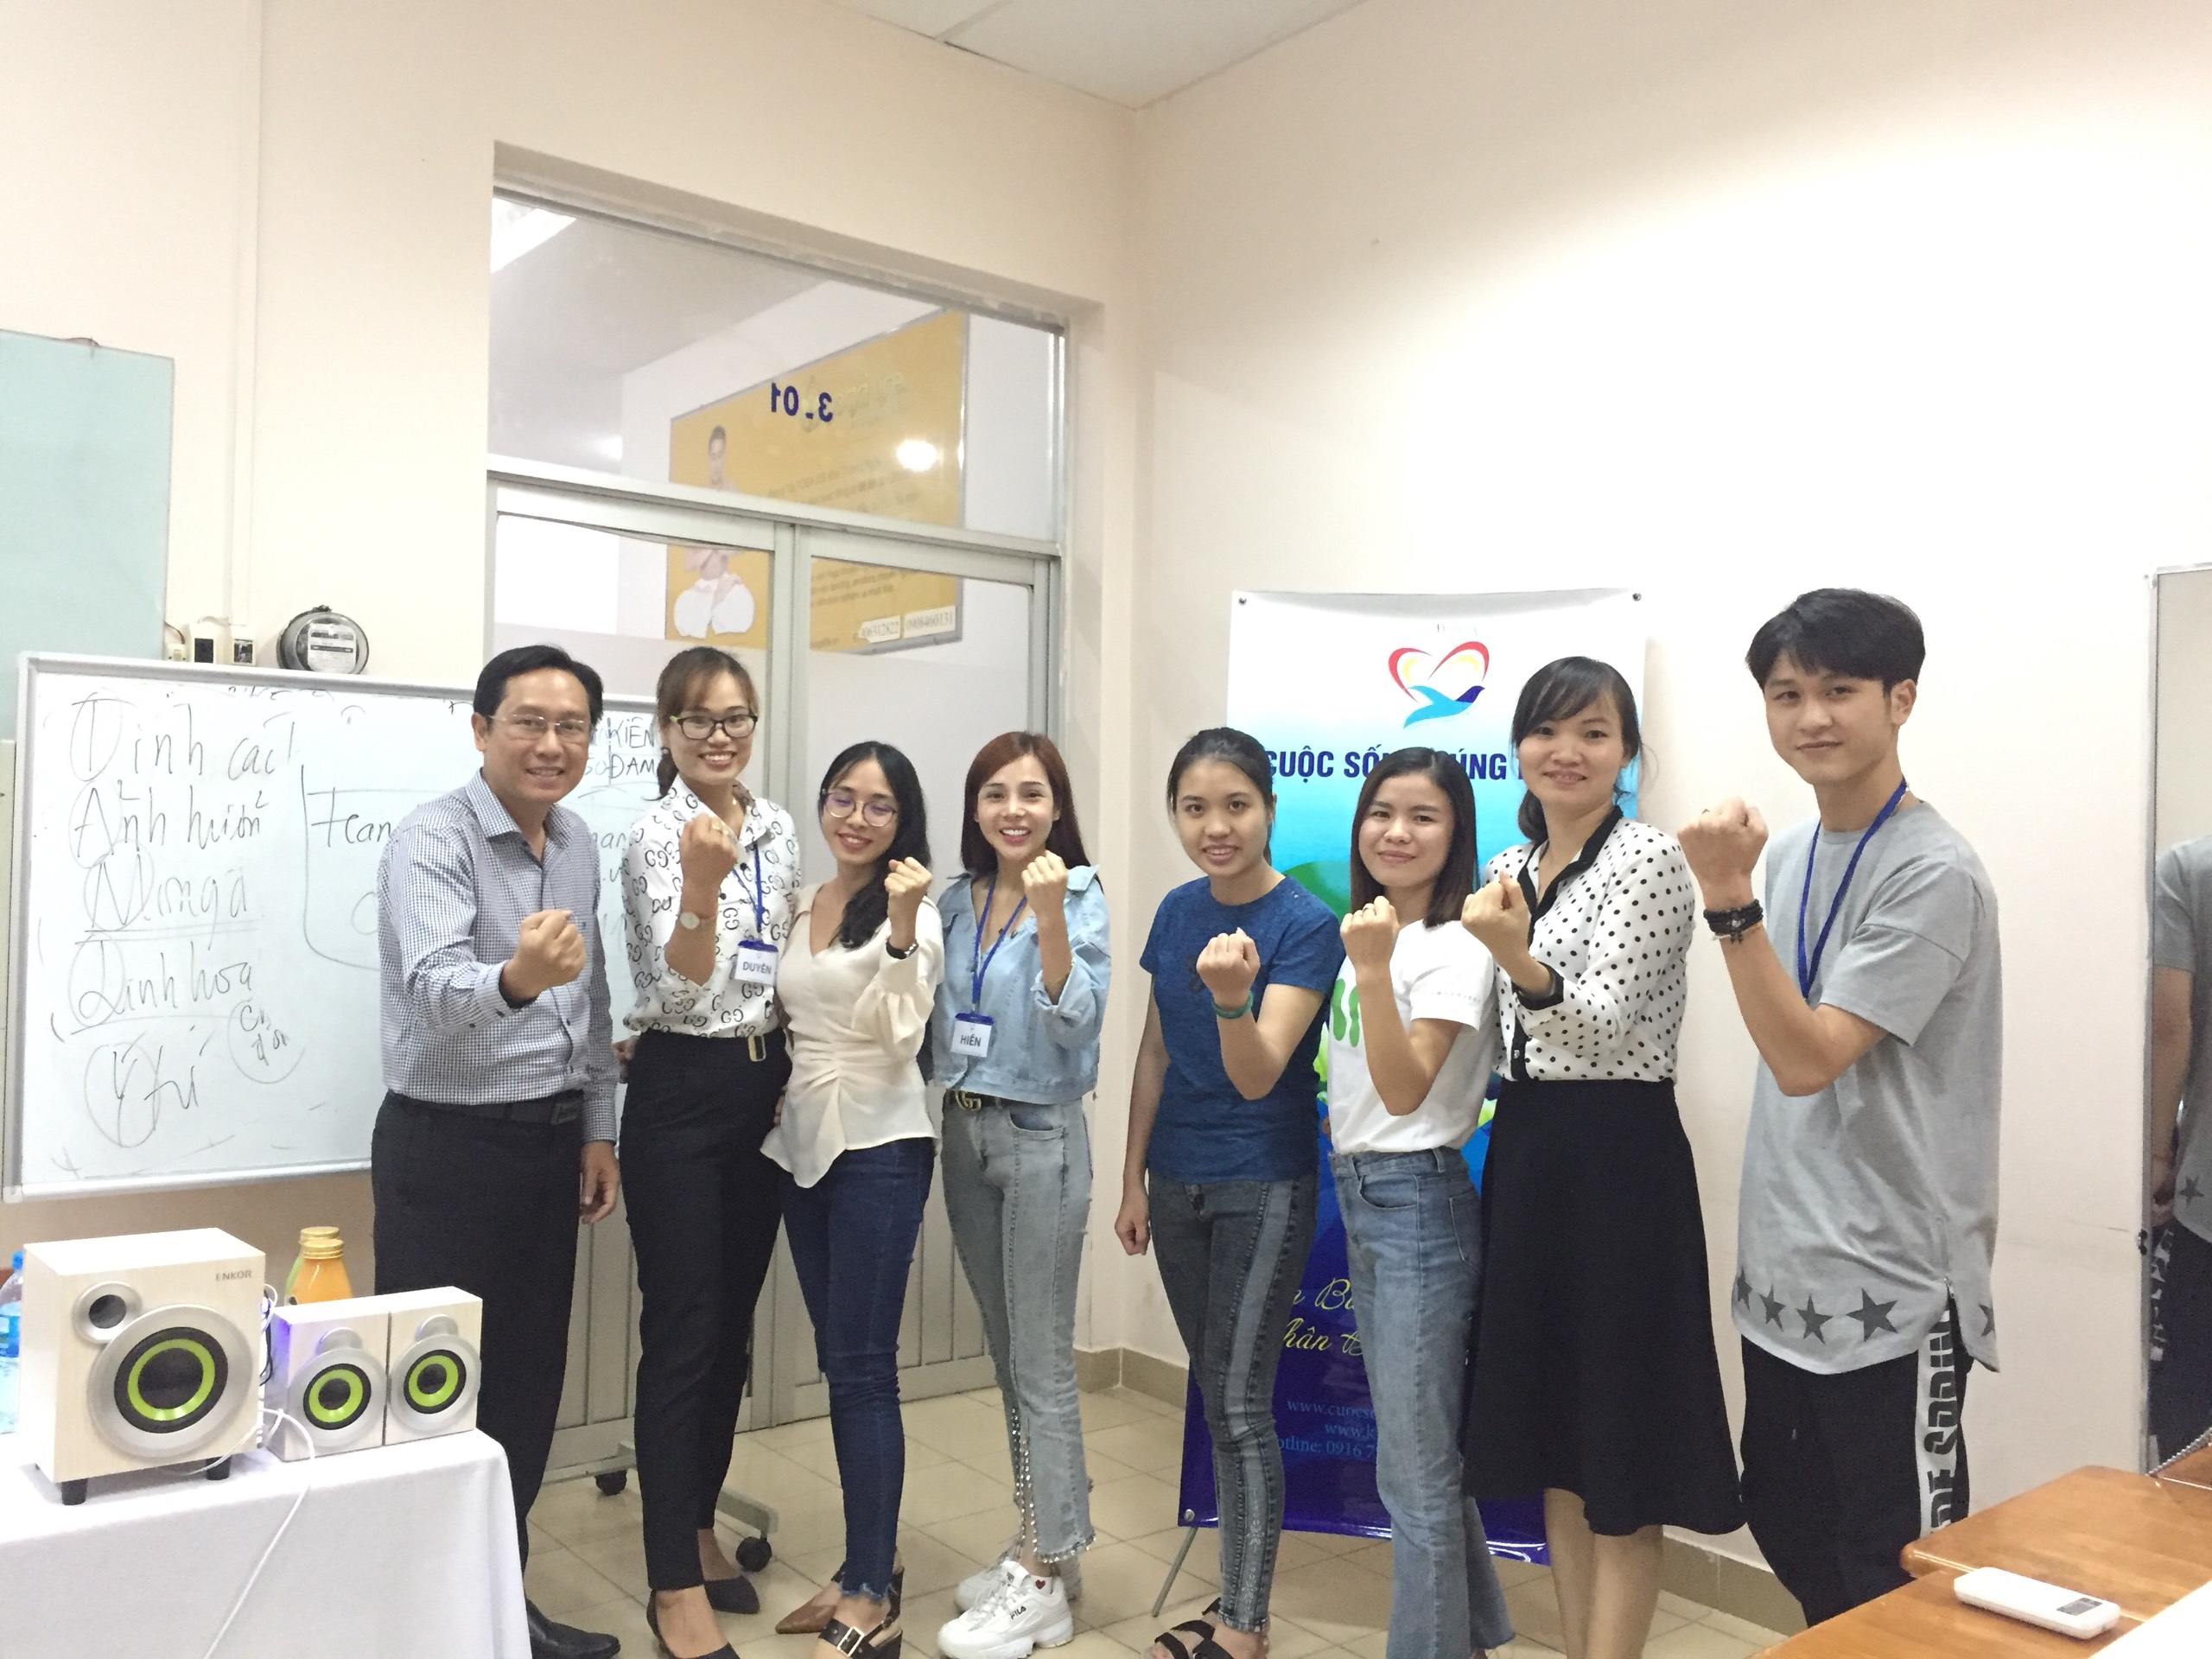 Đào tạo public: “kỹ năng giao tiếp bán hàng và CSKH Hhiệu quả” tại Hồ Chí Minh tháng 09 năm 2019